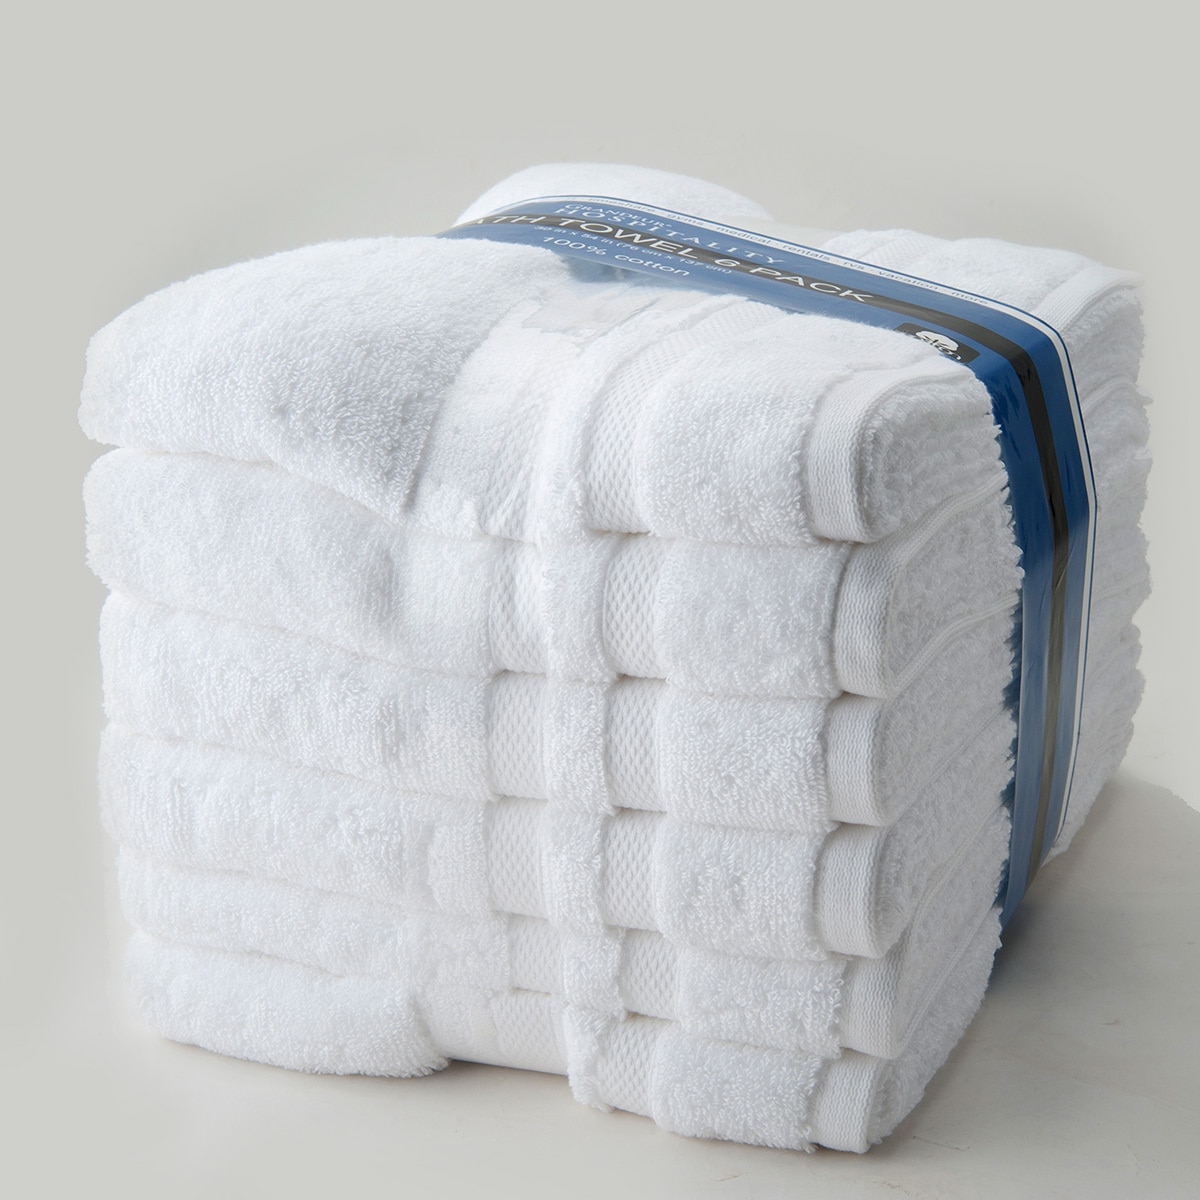 Paquete de 24 toallas blancas de 100 % algodón, duraderas, ligeras, de  grado comercial y ultra absorbentes